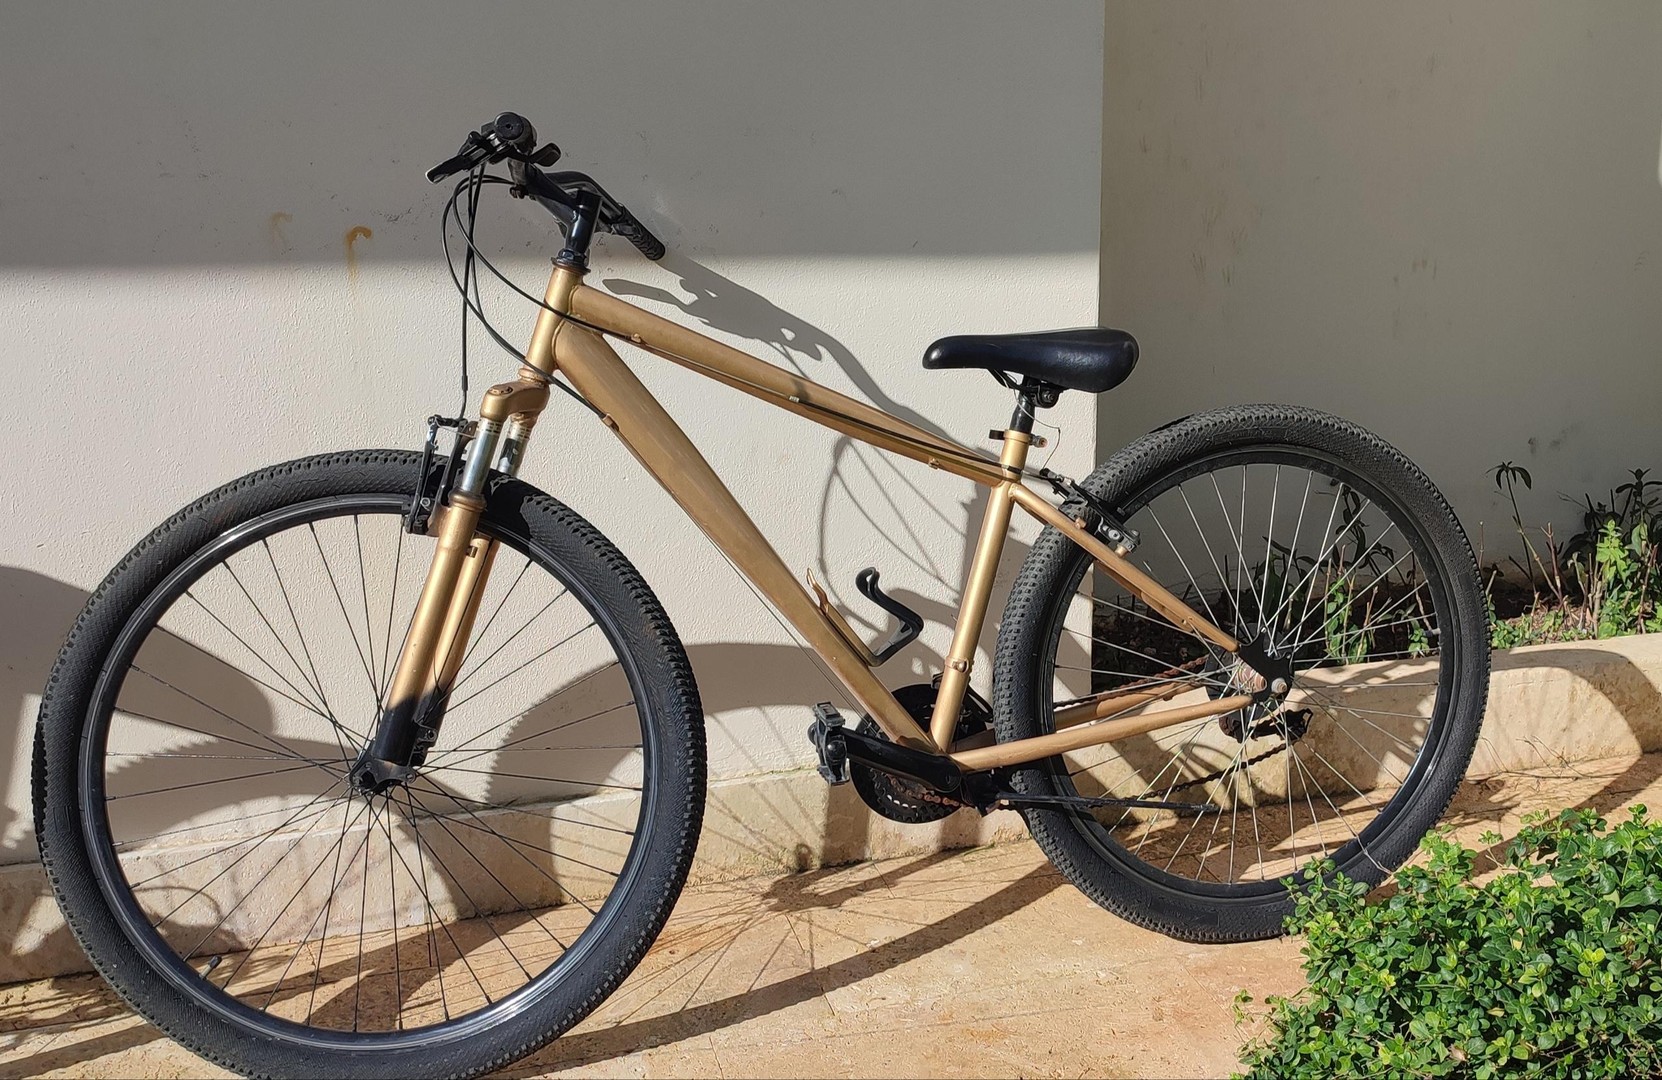 bicicletas y accesorios - Bicicleta  perfecta para quien busca una opción confiable y econónomica